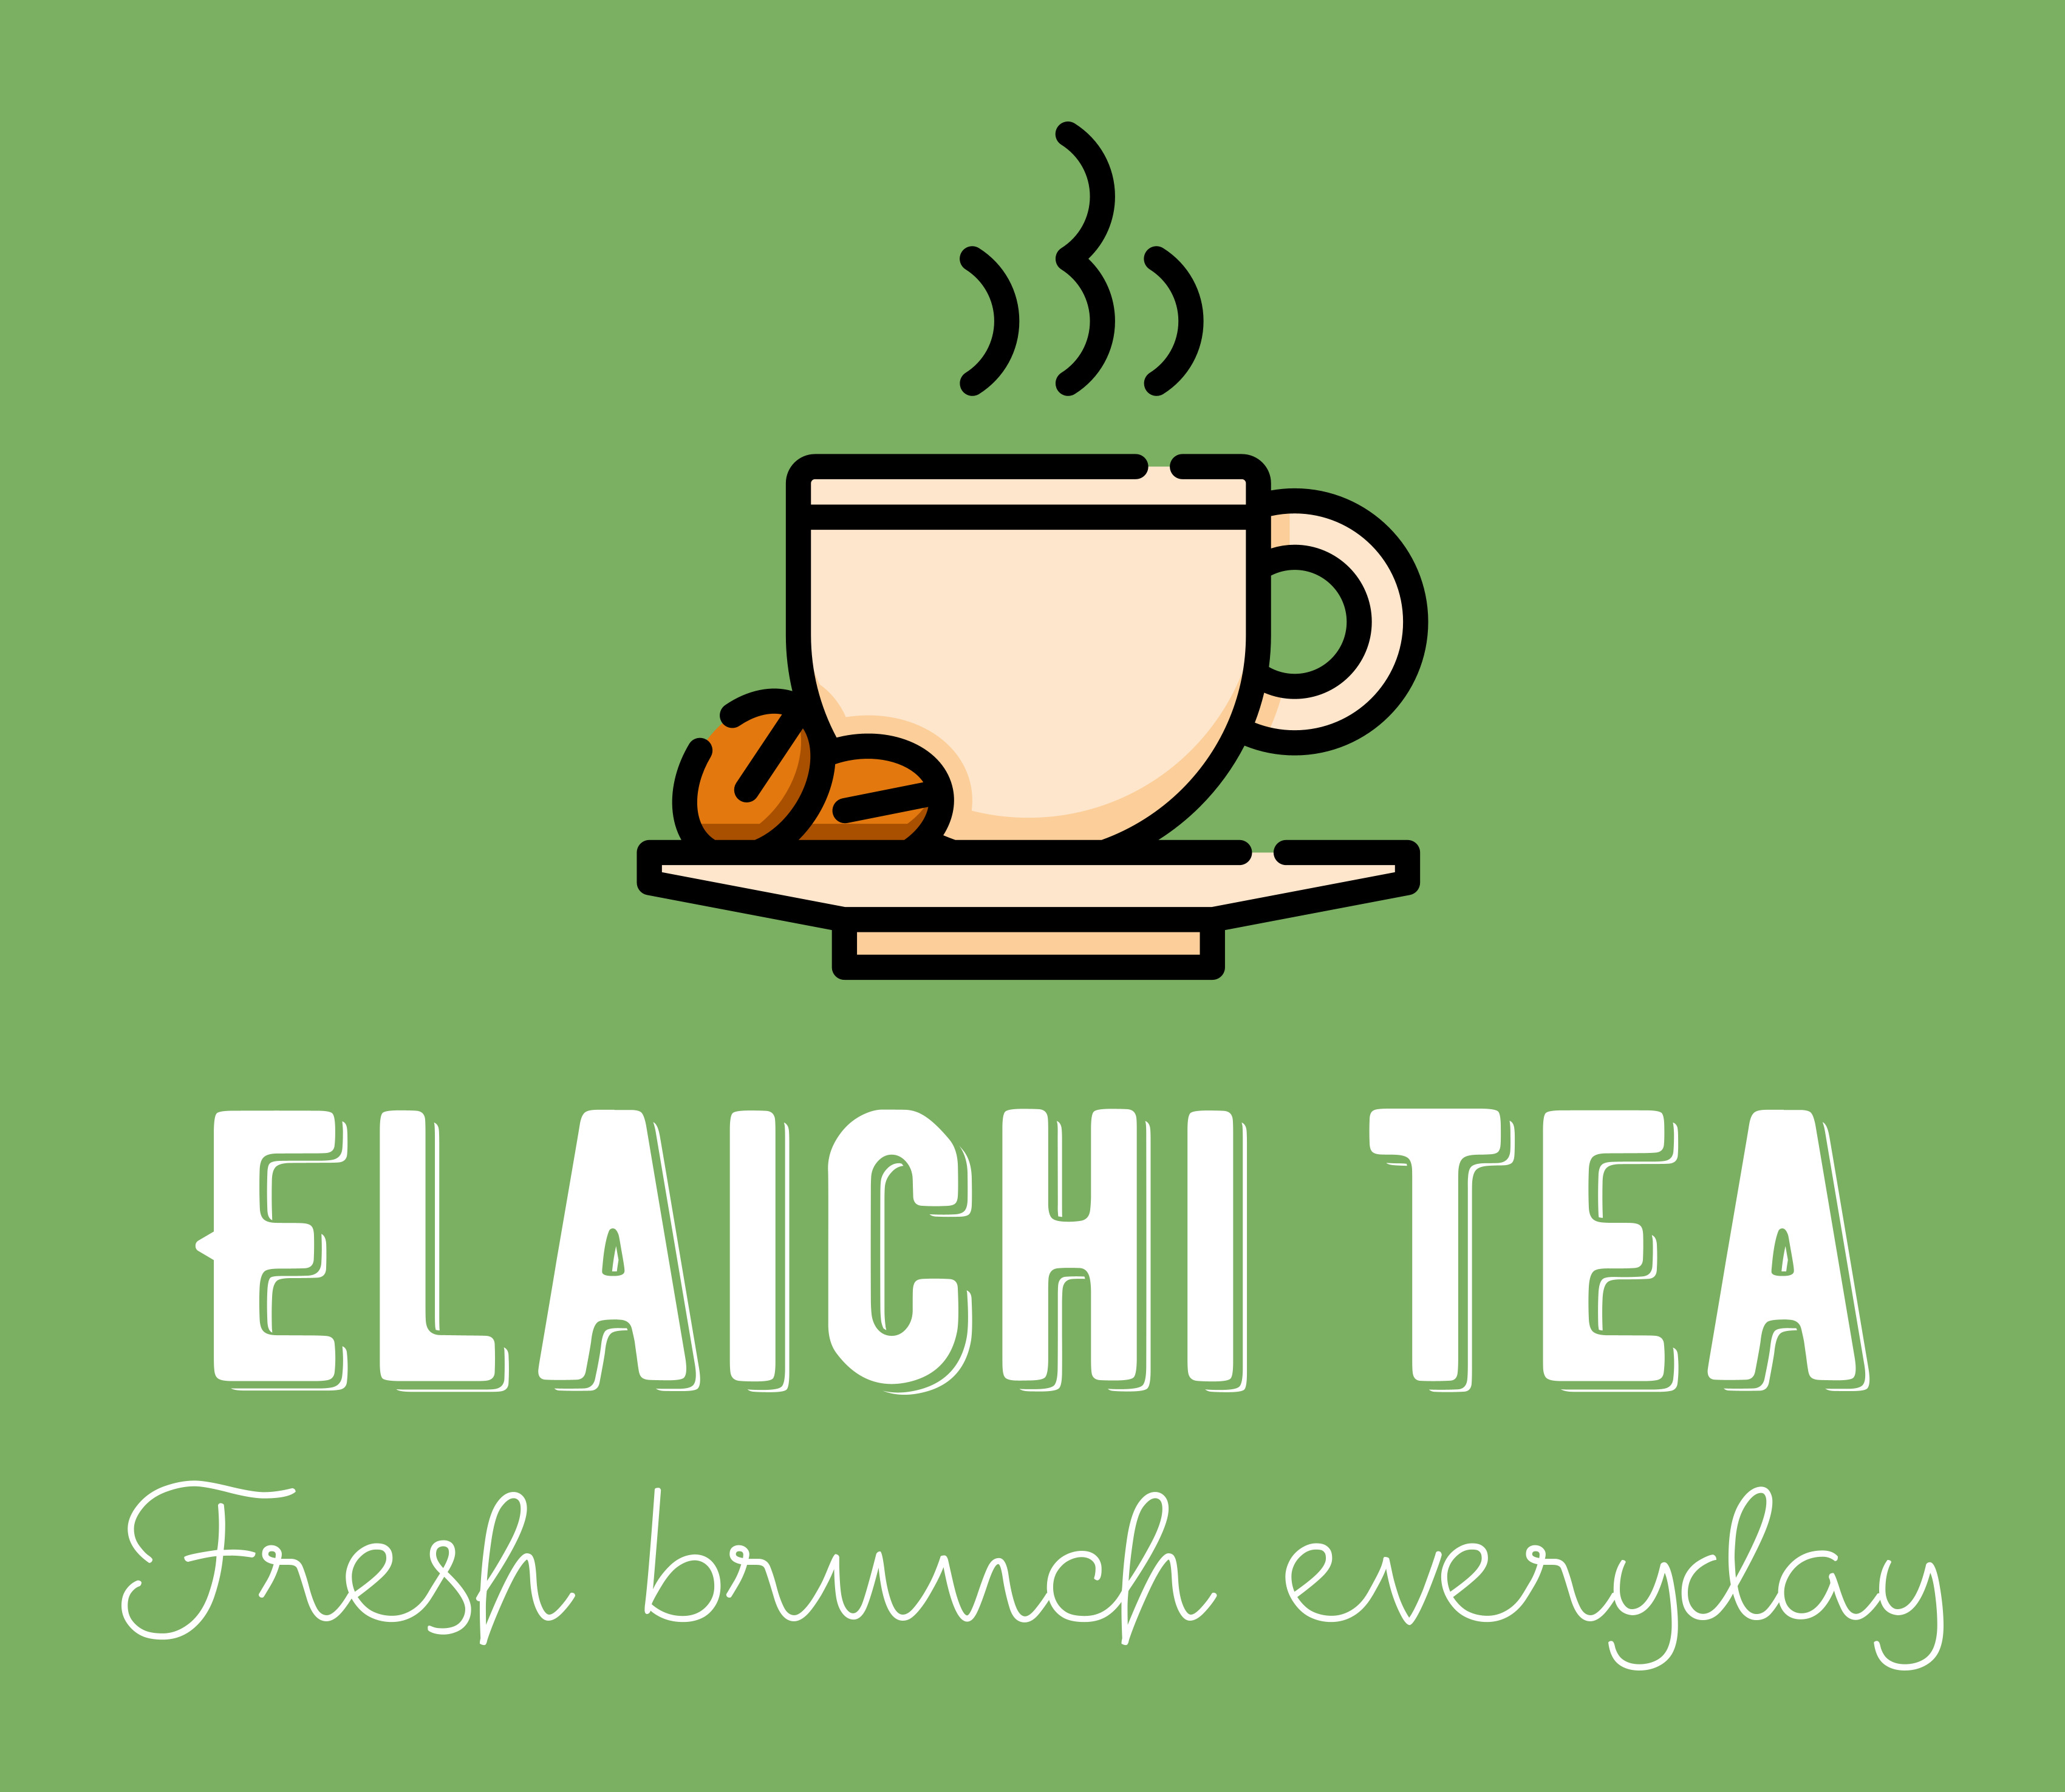 Elaichi Tea